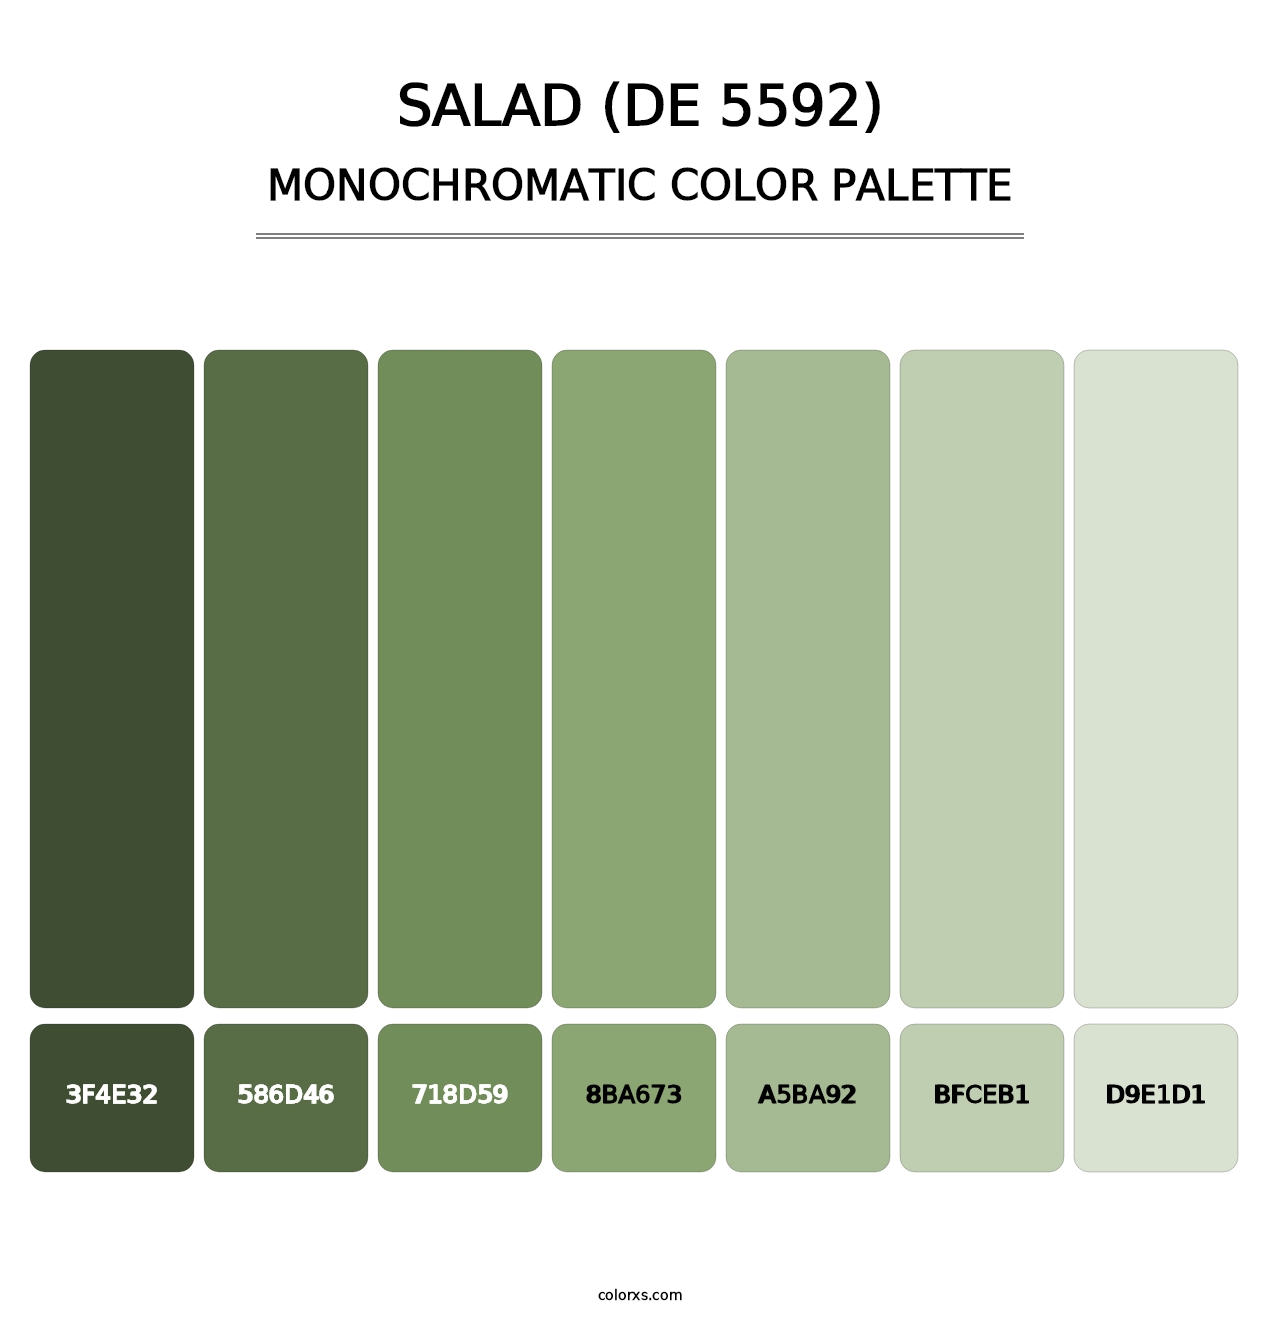 Salad (DE 5592) - Monochromatic Color Palette